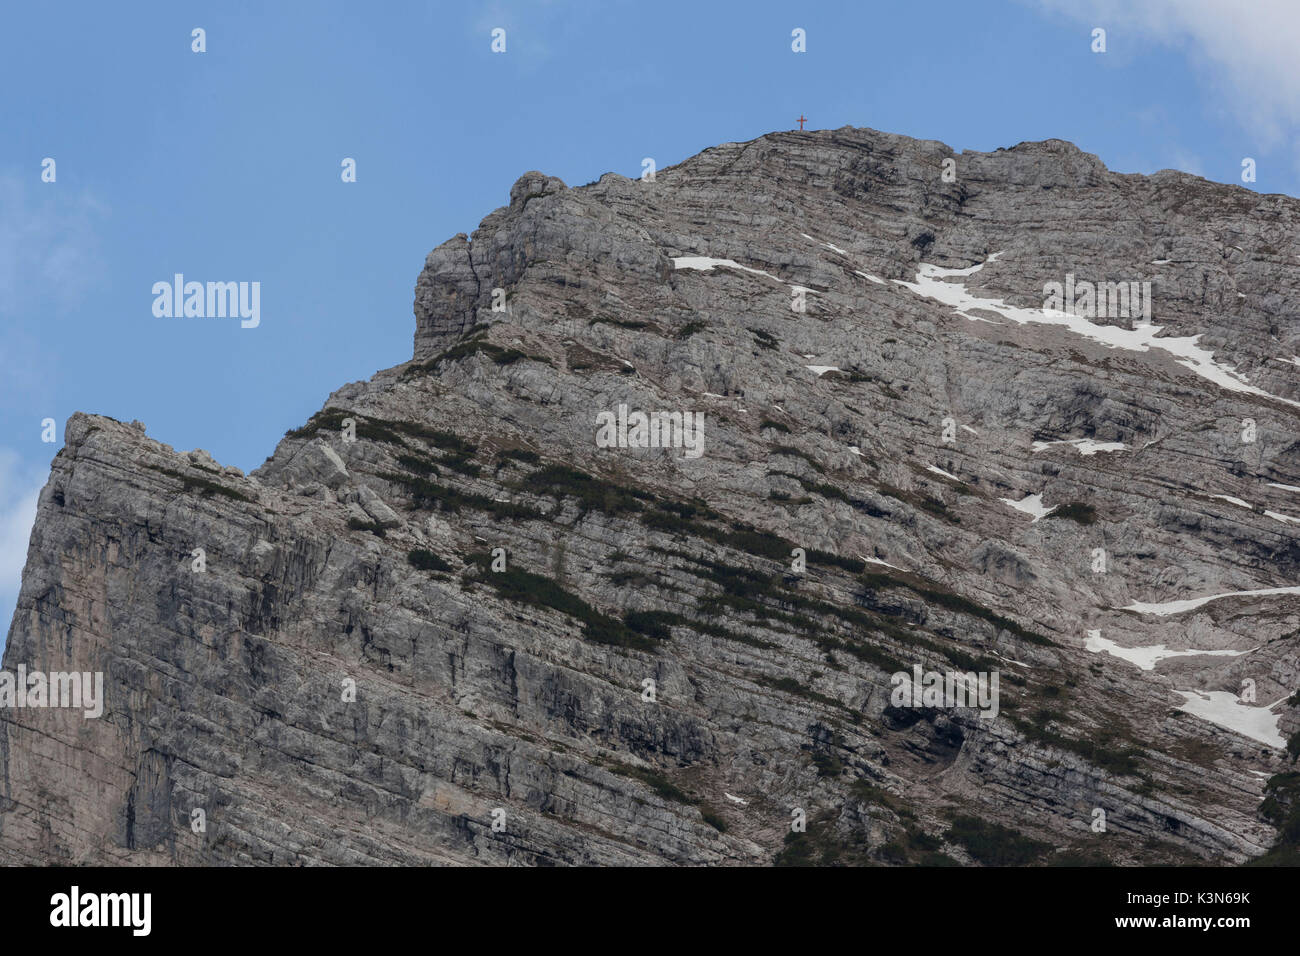 El lado norte del Piz de Mezodi', también llamado Zima de la Cros (pico de la cruz) Monti del Sole, Parque Nacional Dolomitas de Belluno Foto de stock